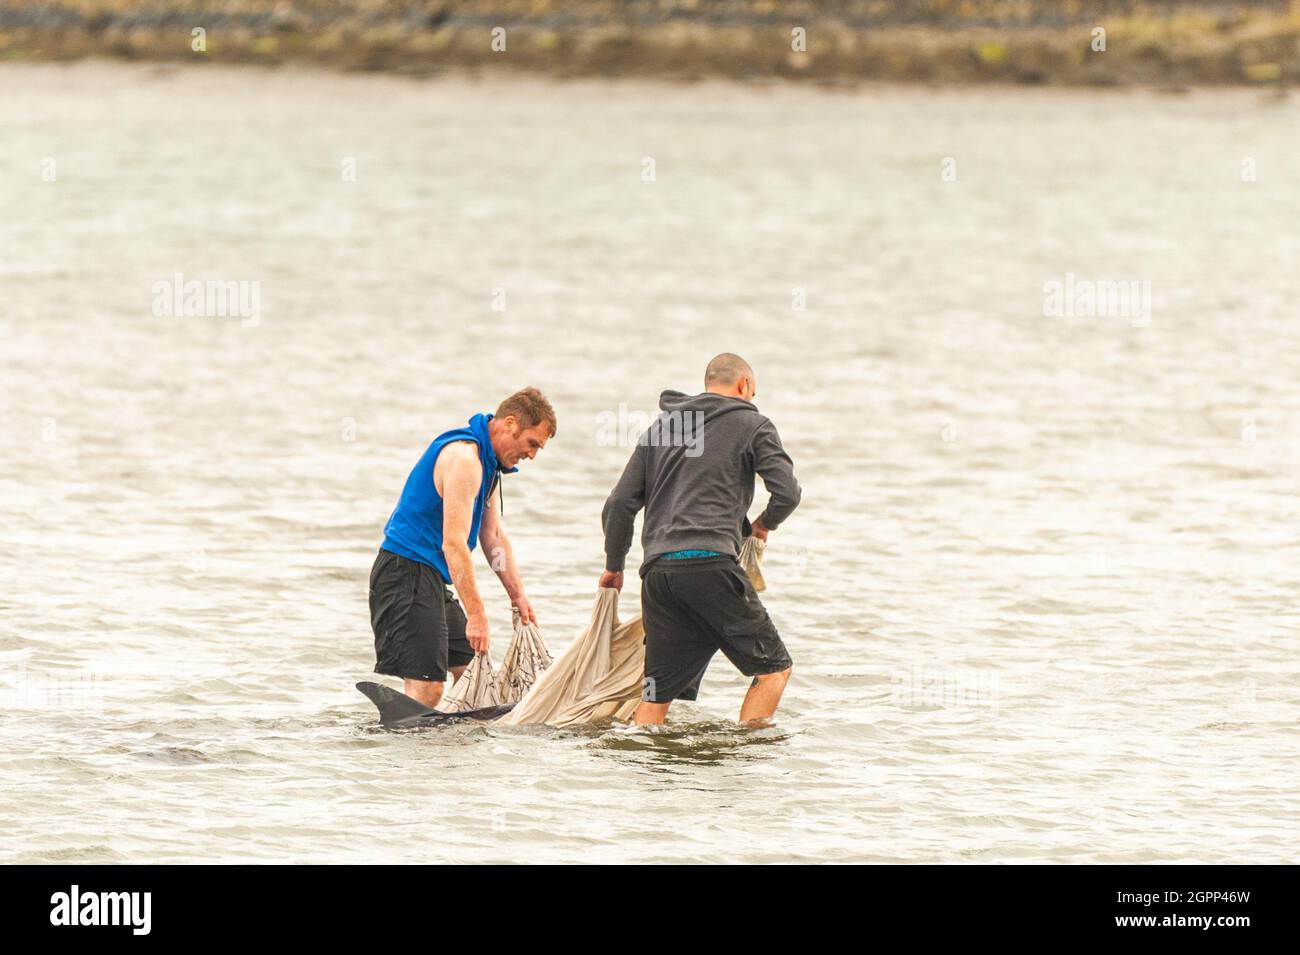 Timoleague, West Cork, Irland. September 2021. Ein weiterer Delphin ist in West Cork gestrandet. Im Januar dieses Jahres strandete sich ein Delfin in Courtmacsherry. Dieser Delfin hat einen beschädigten Schwanz und ein Auge ist dauerhaft geschlossen. Zwei besorgte Einheimische, Mick und Clive, versuchten, den Delfinen beim Schwimmen ins Meer zu helfen. Quelle: AG News/Alamy Live News Stockfoto